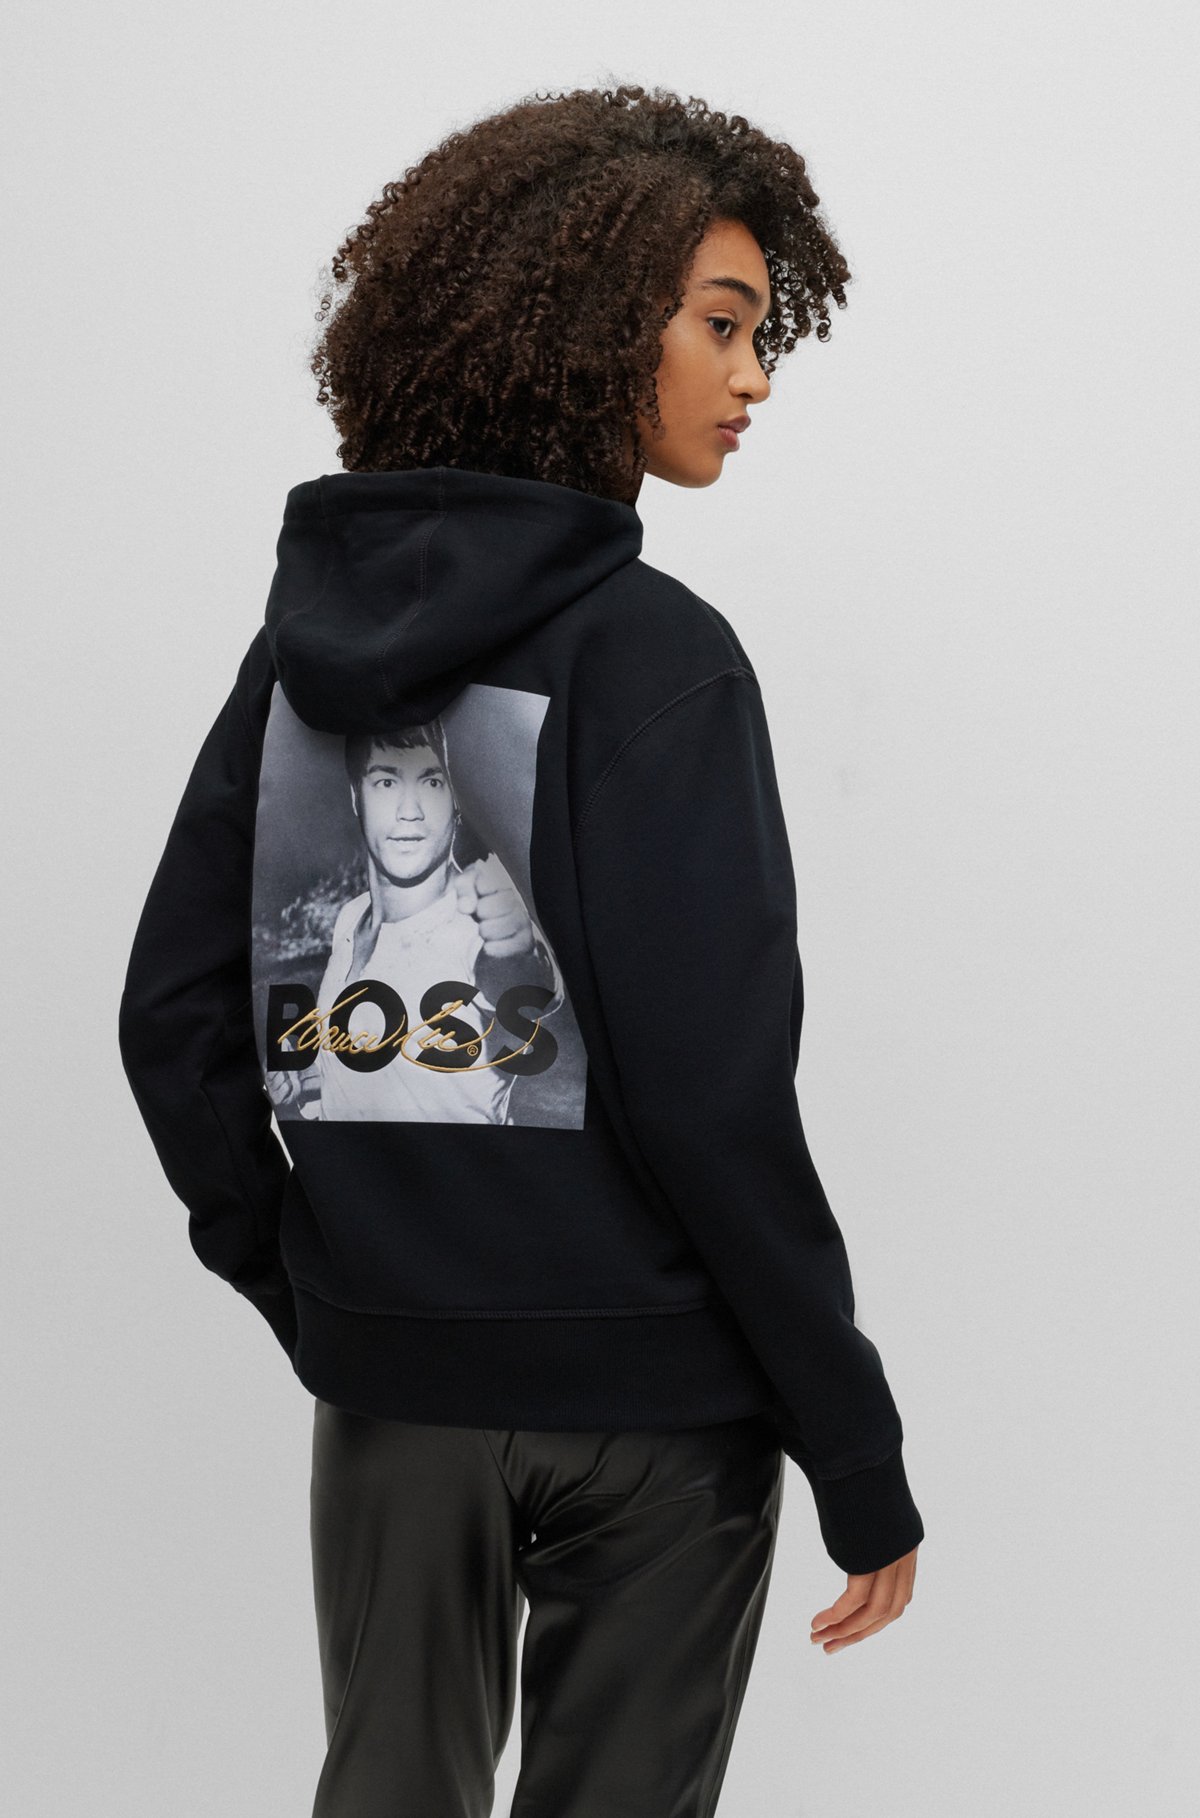 gitaar ondergronds Voetzool BOSS - BOSS x Bruce Lee genderneutrale hoodie met speciaal artwork